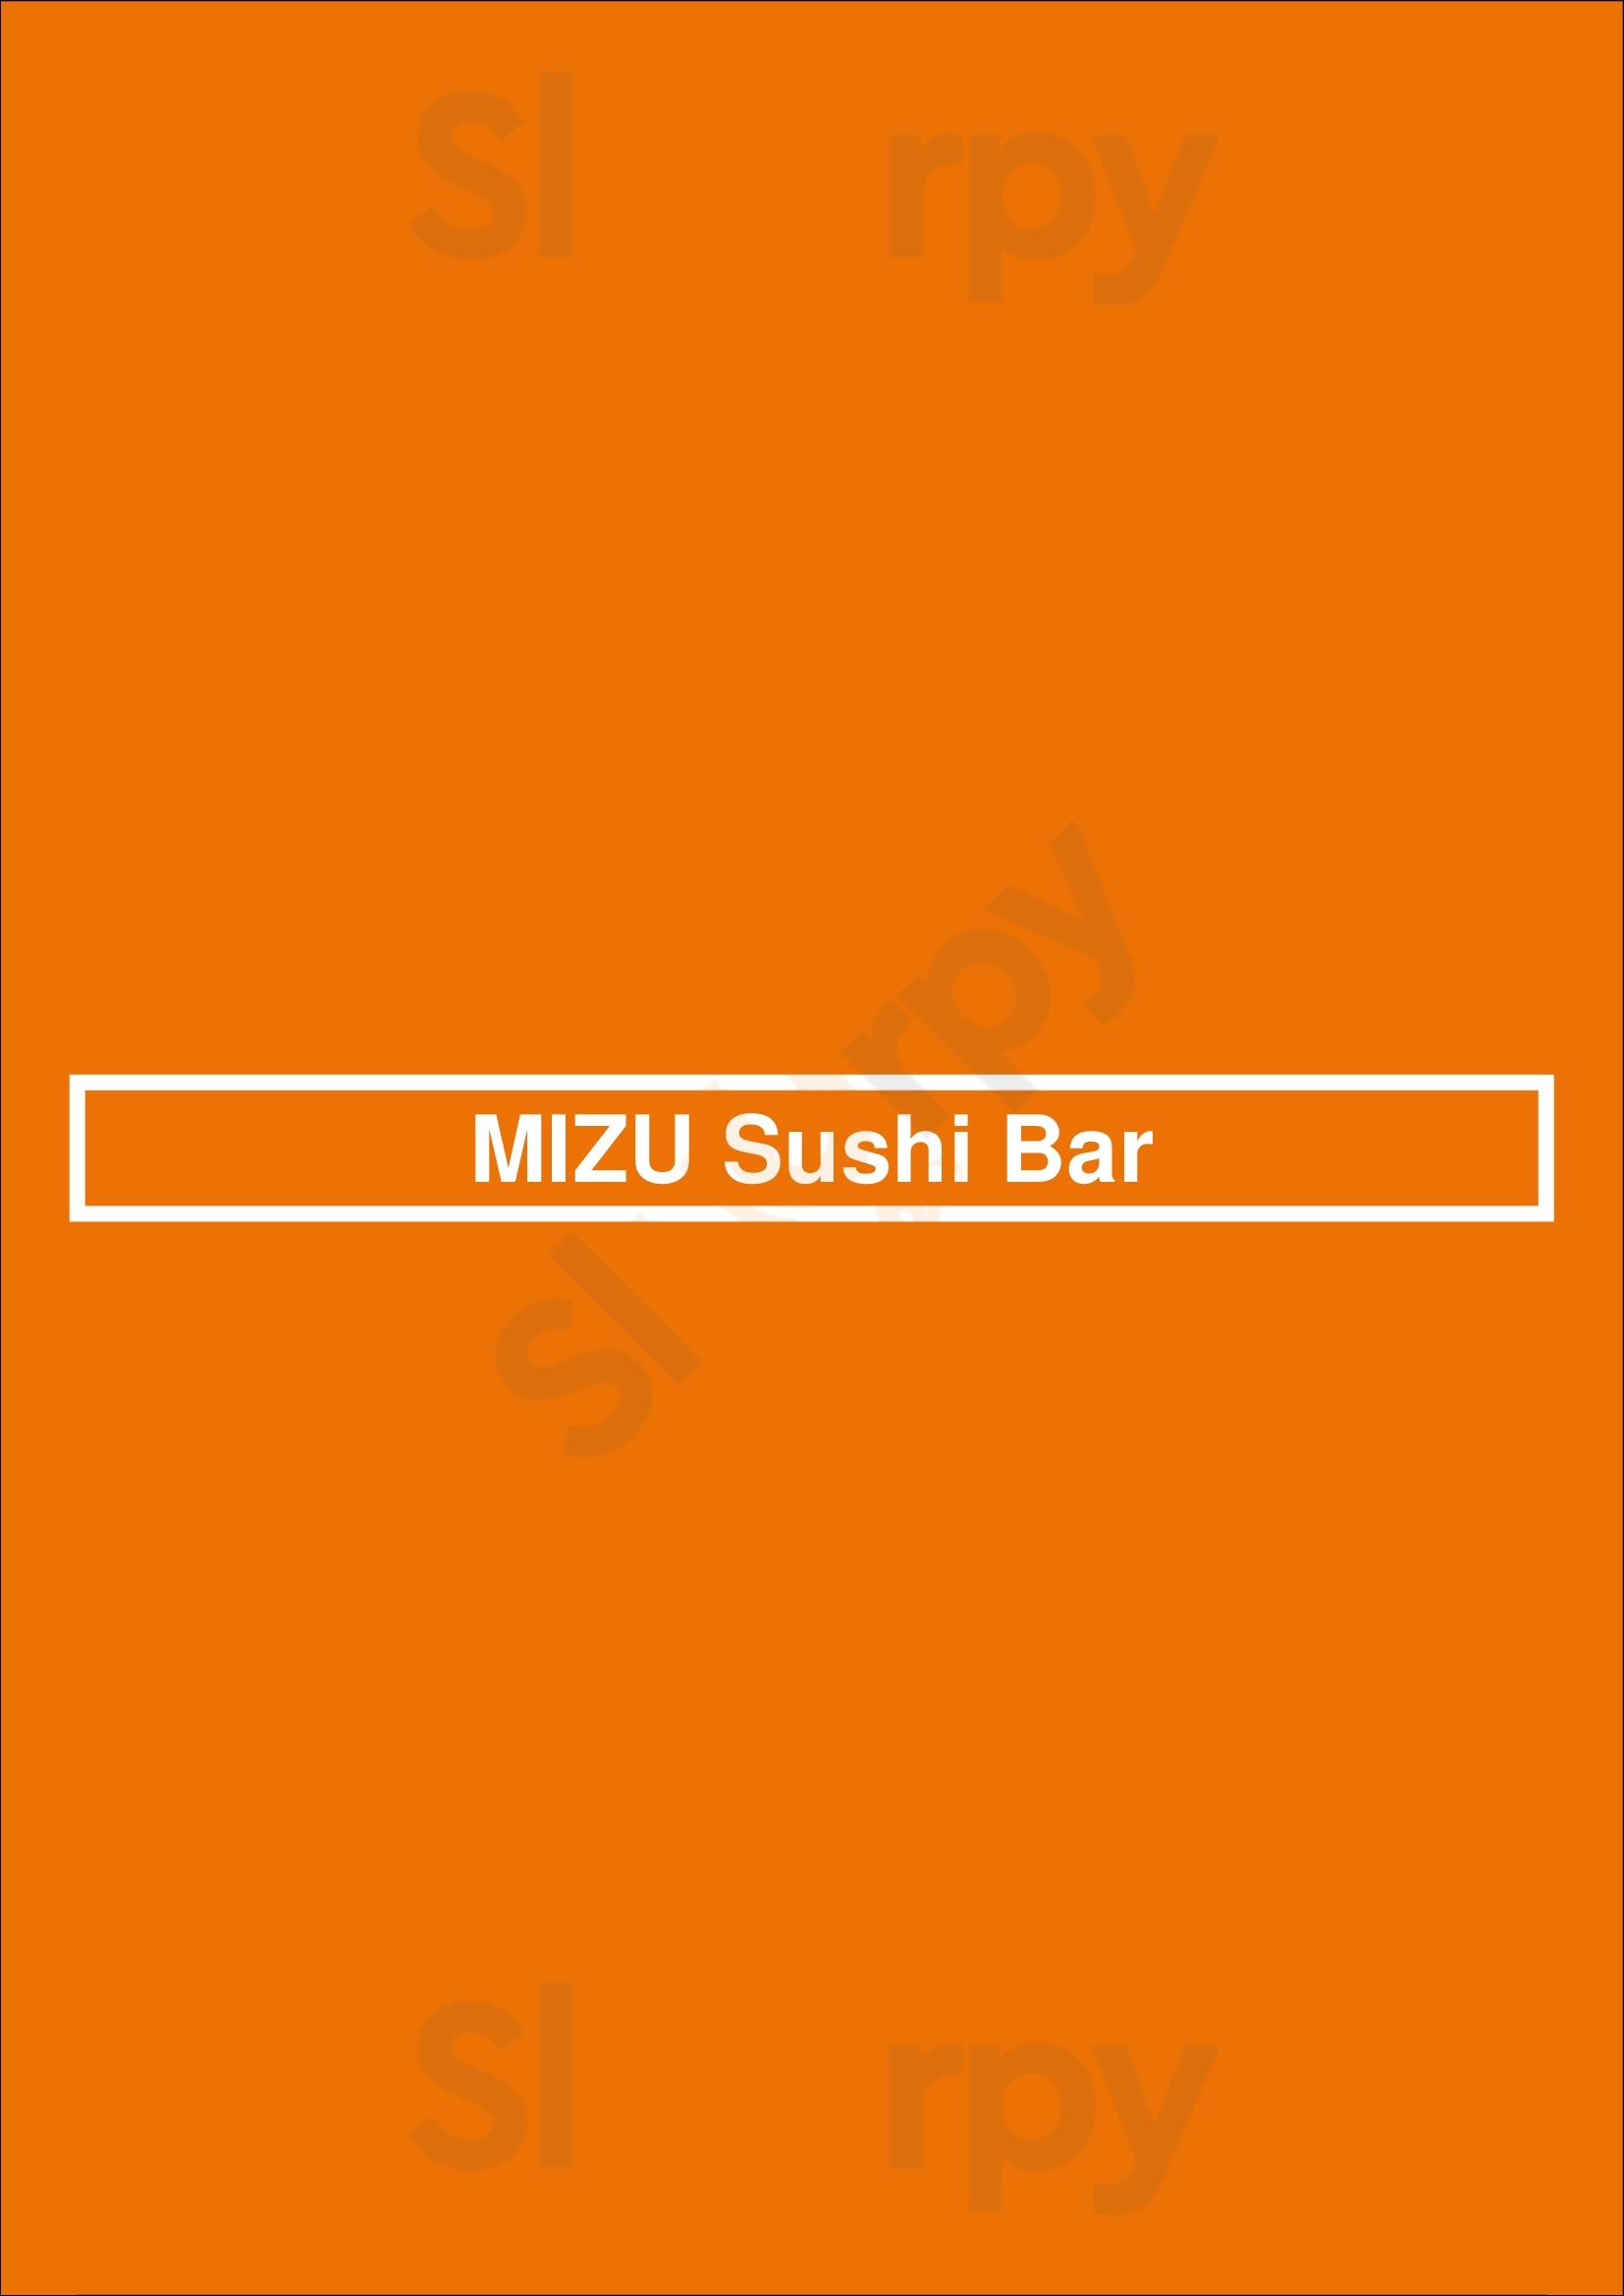 Mizu Sushi Bar Rottach-Egern Menu - 1